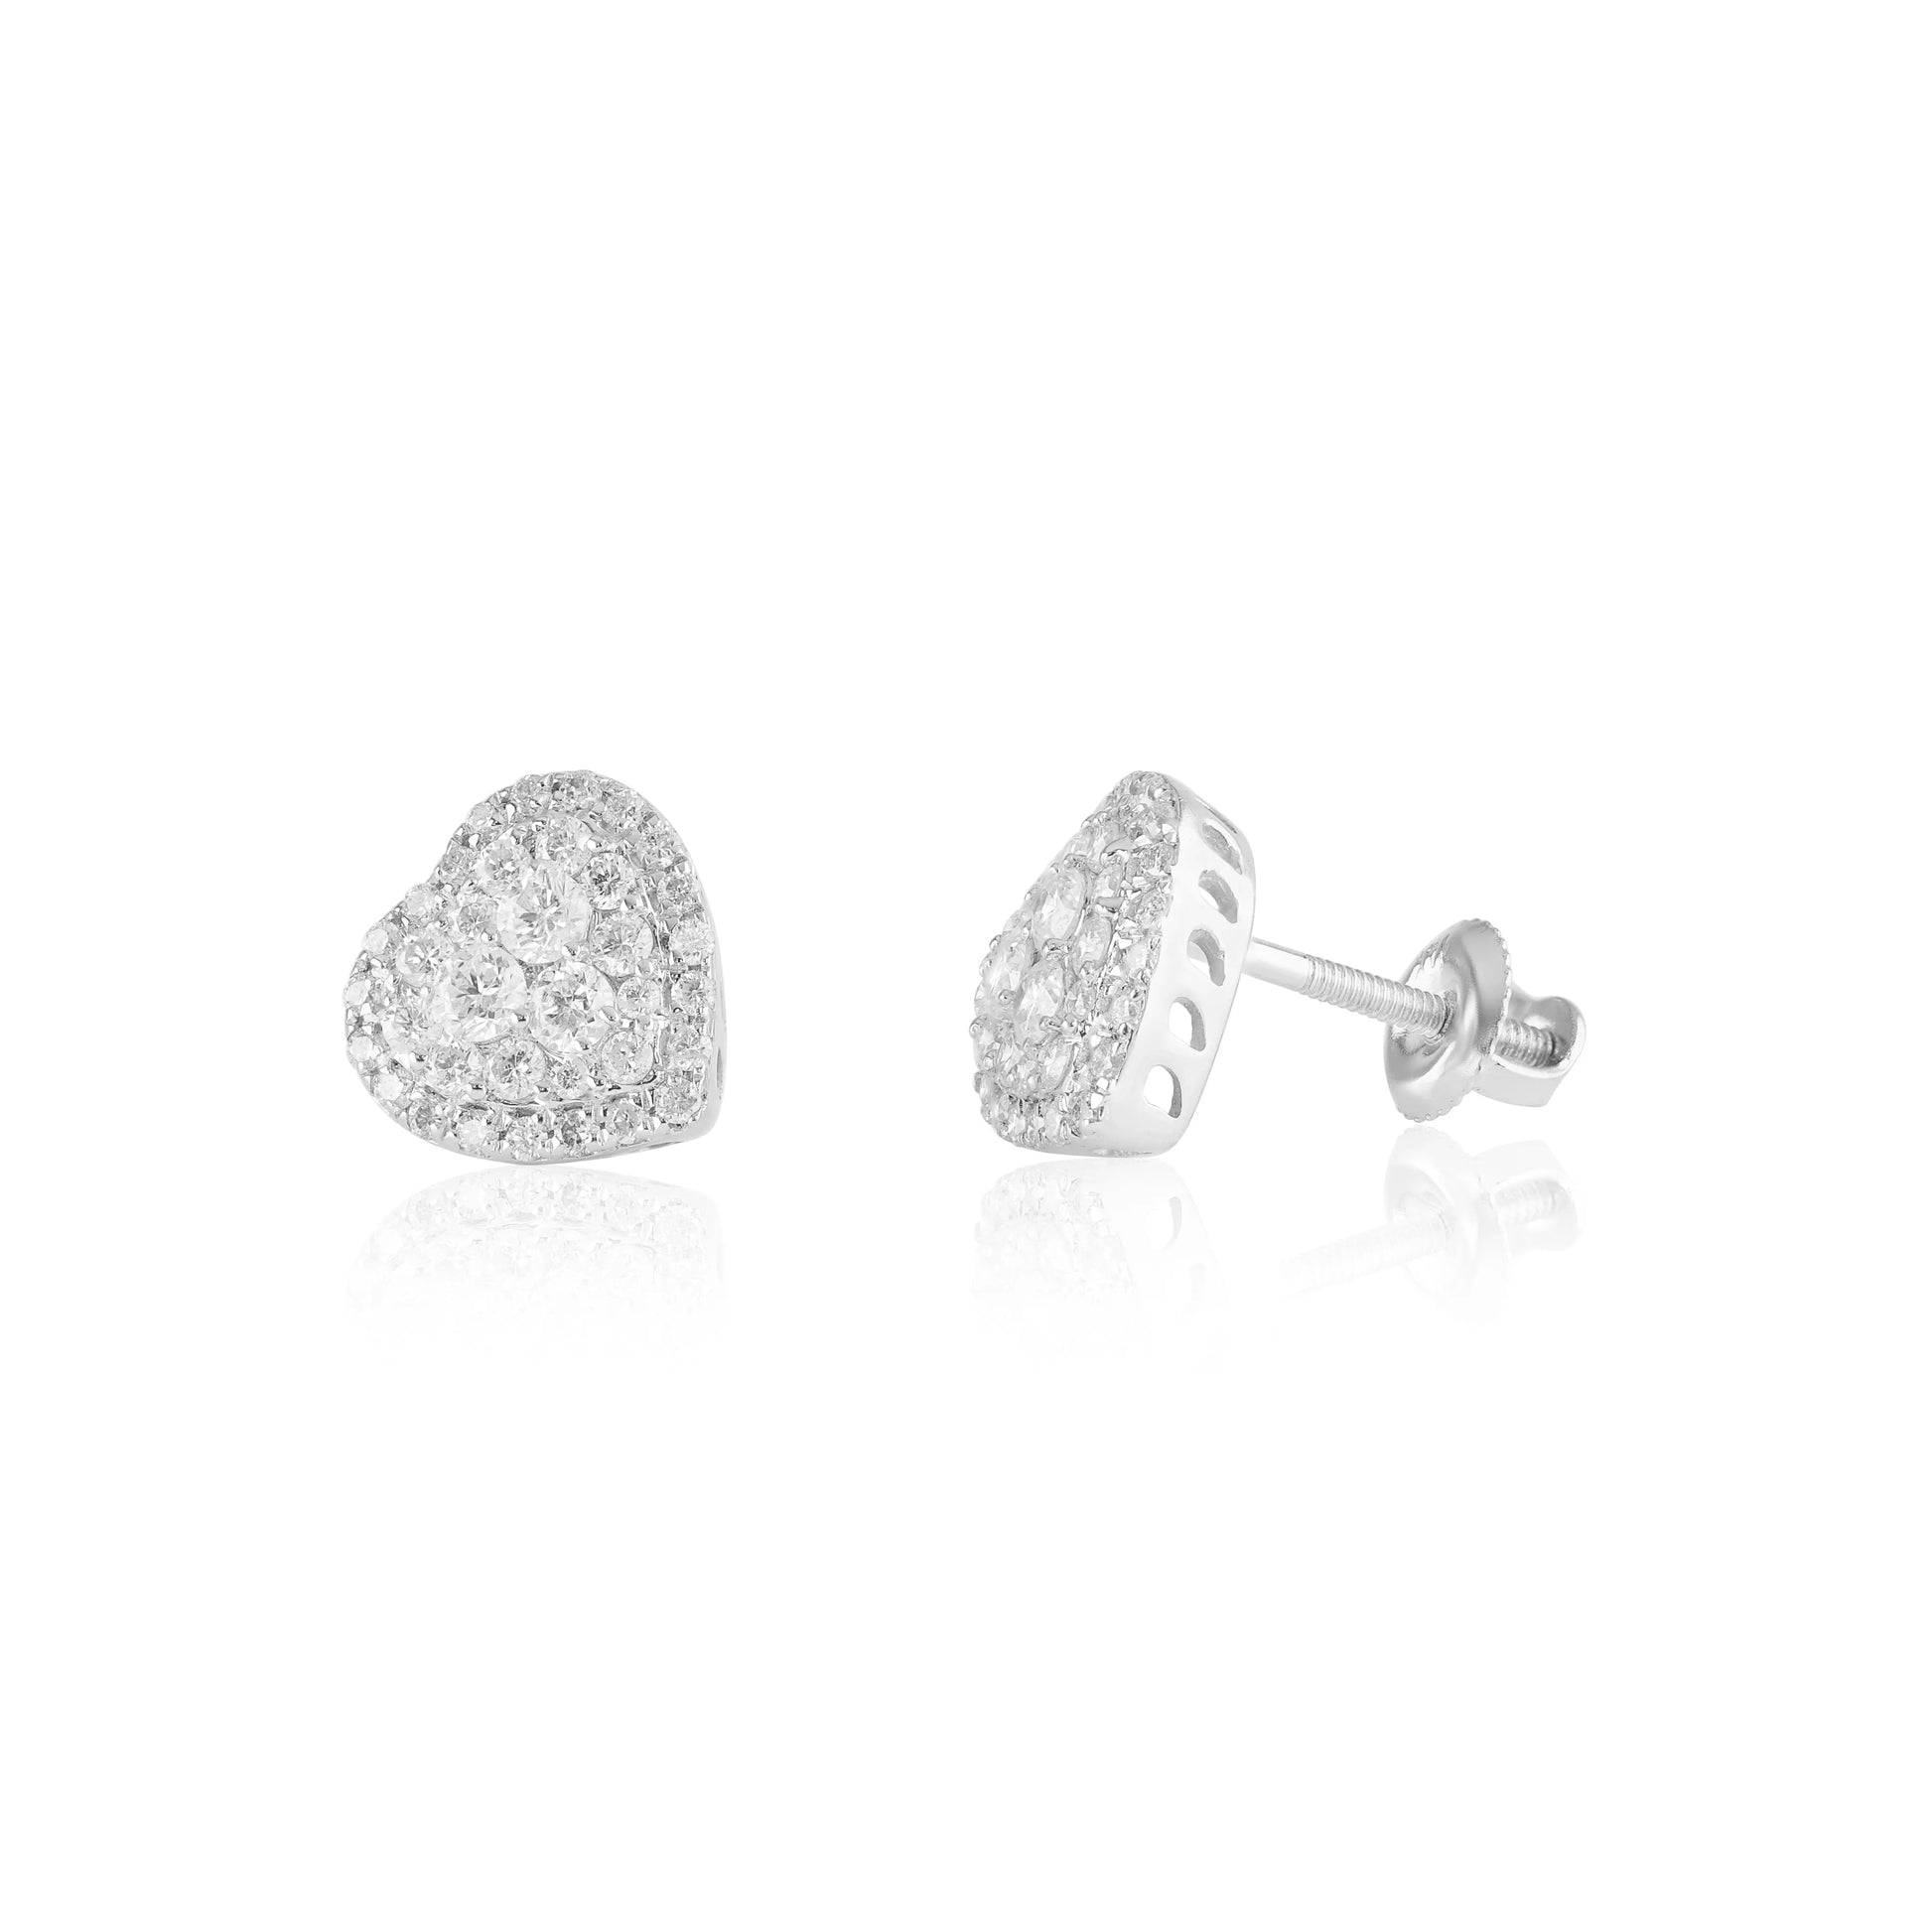 White Gold Earrings Heart Diamond Stud Earrings Danson Jewelers Danson Jewelers 